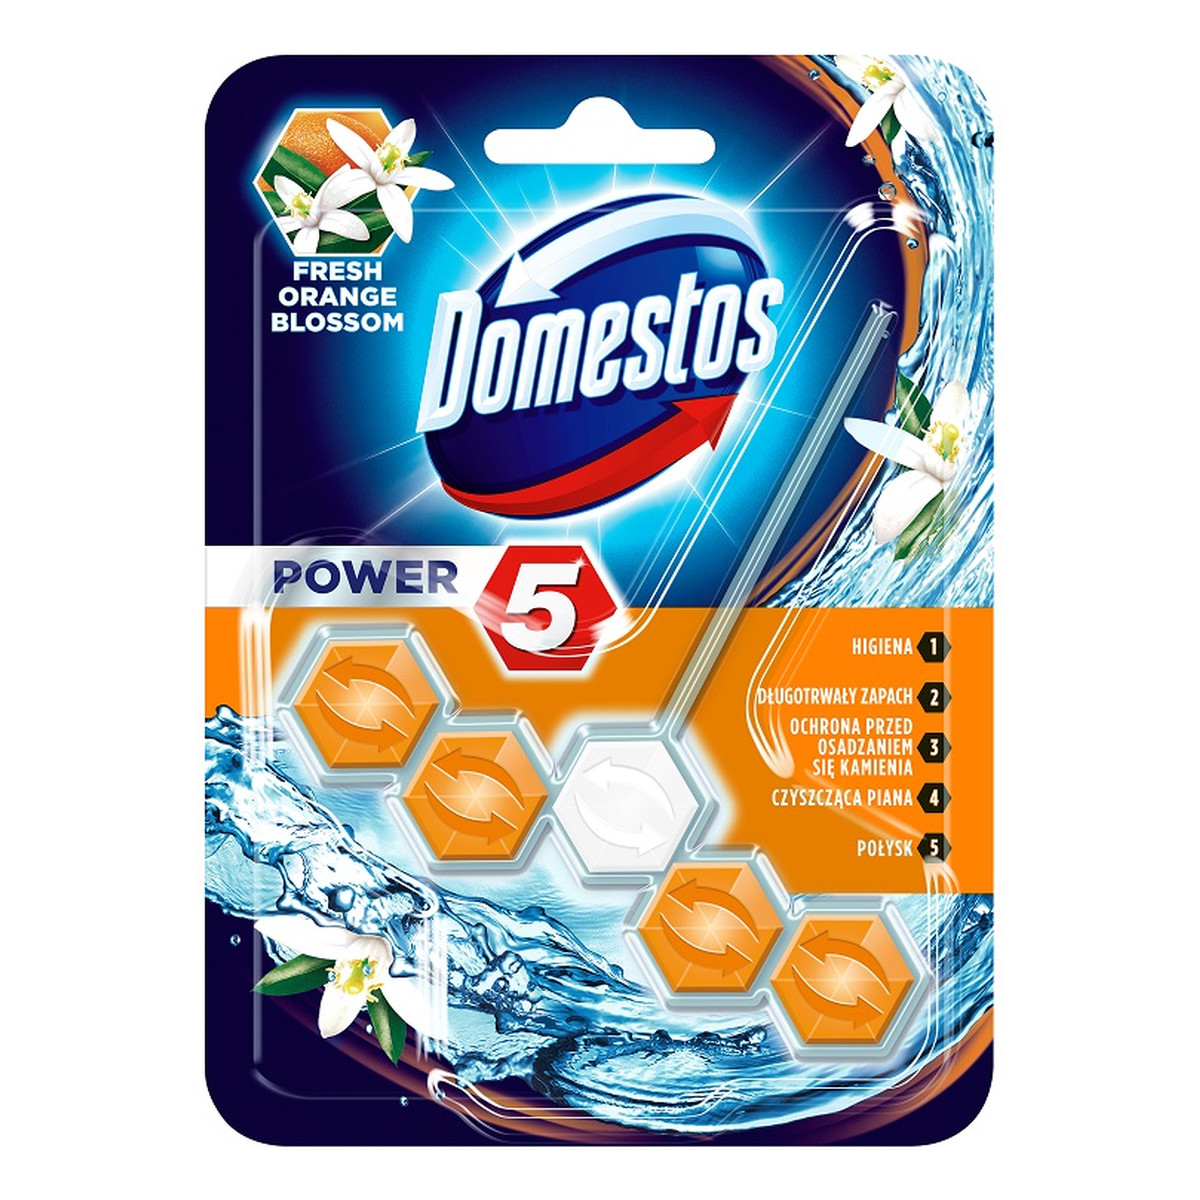 Domestos Power 5 kostka toaletowa Fresh Orange Blossom 55g